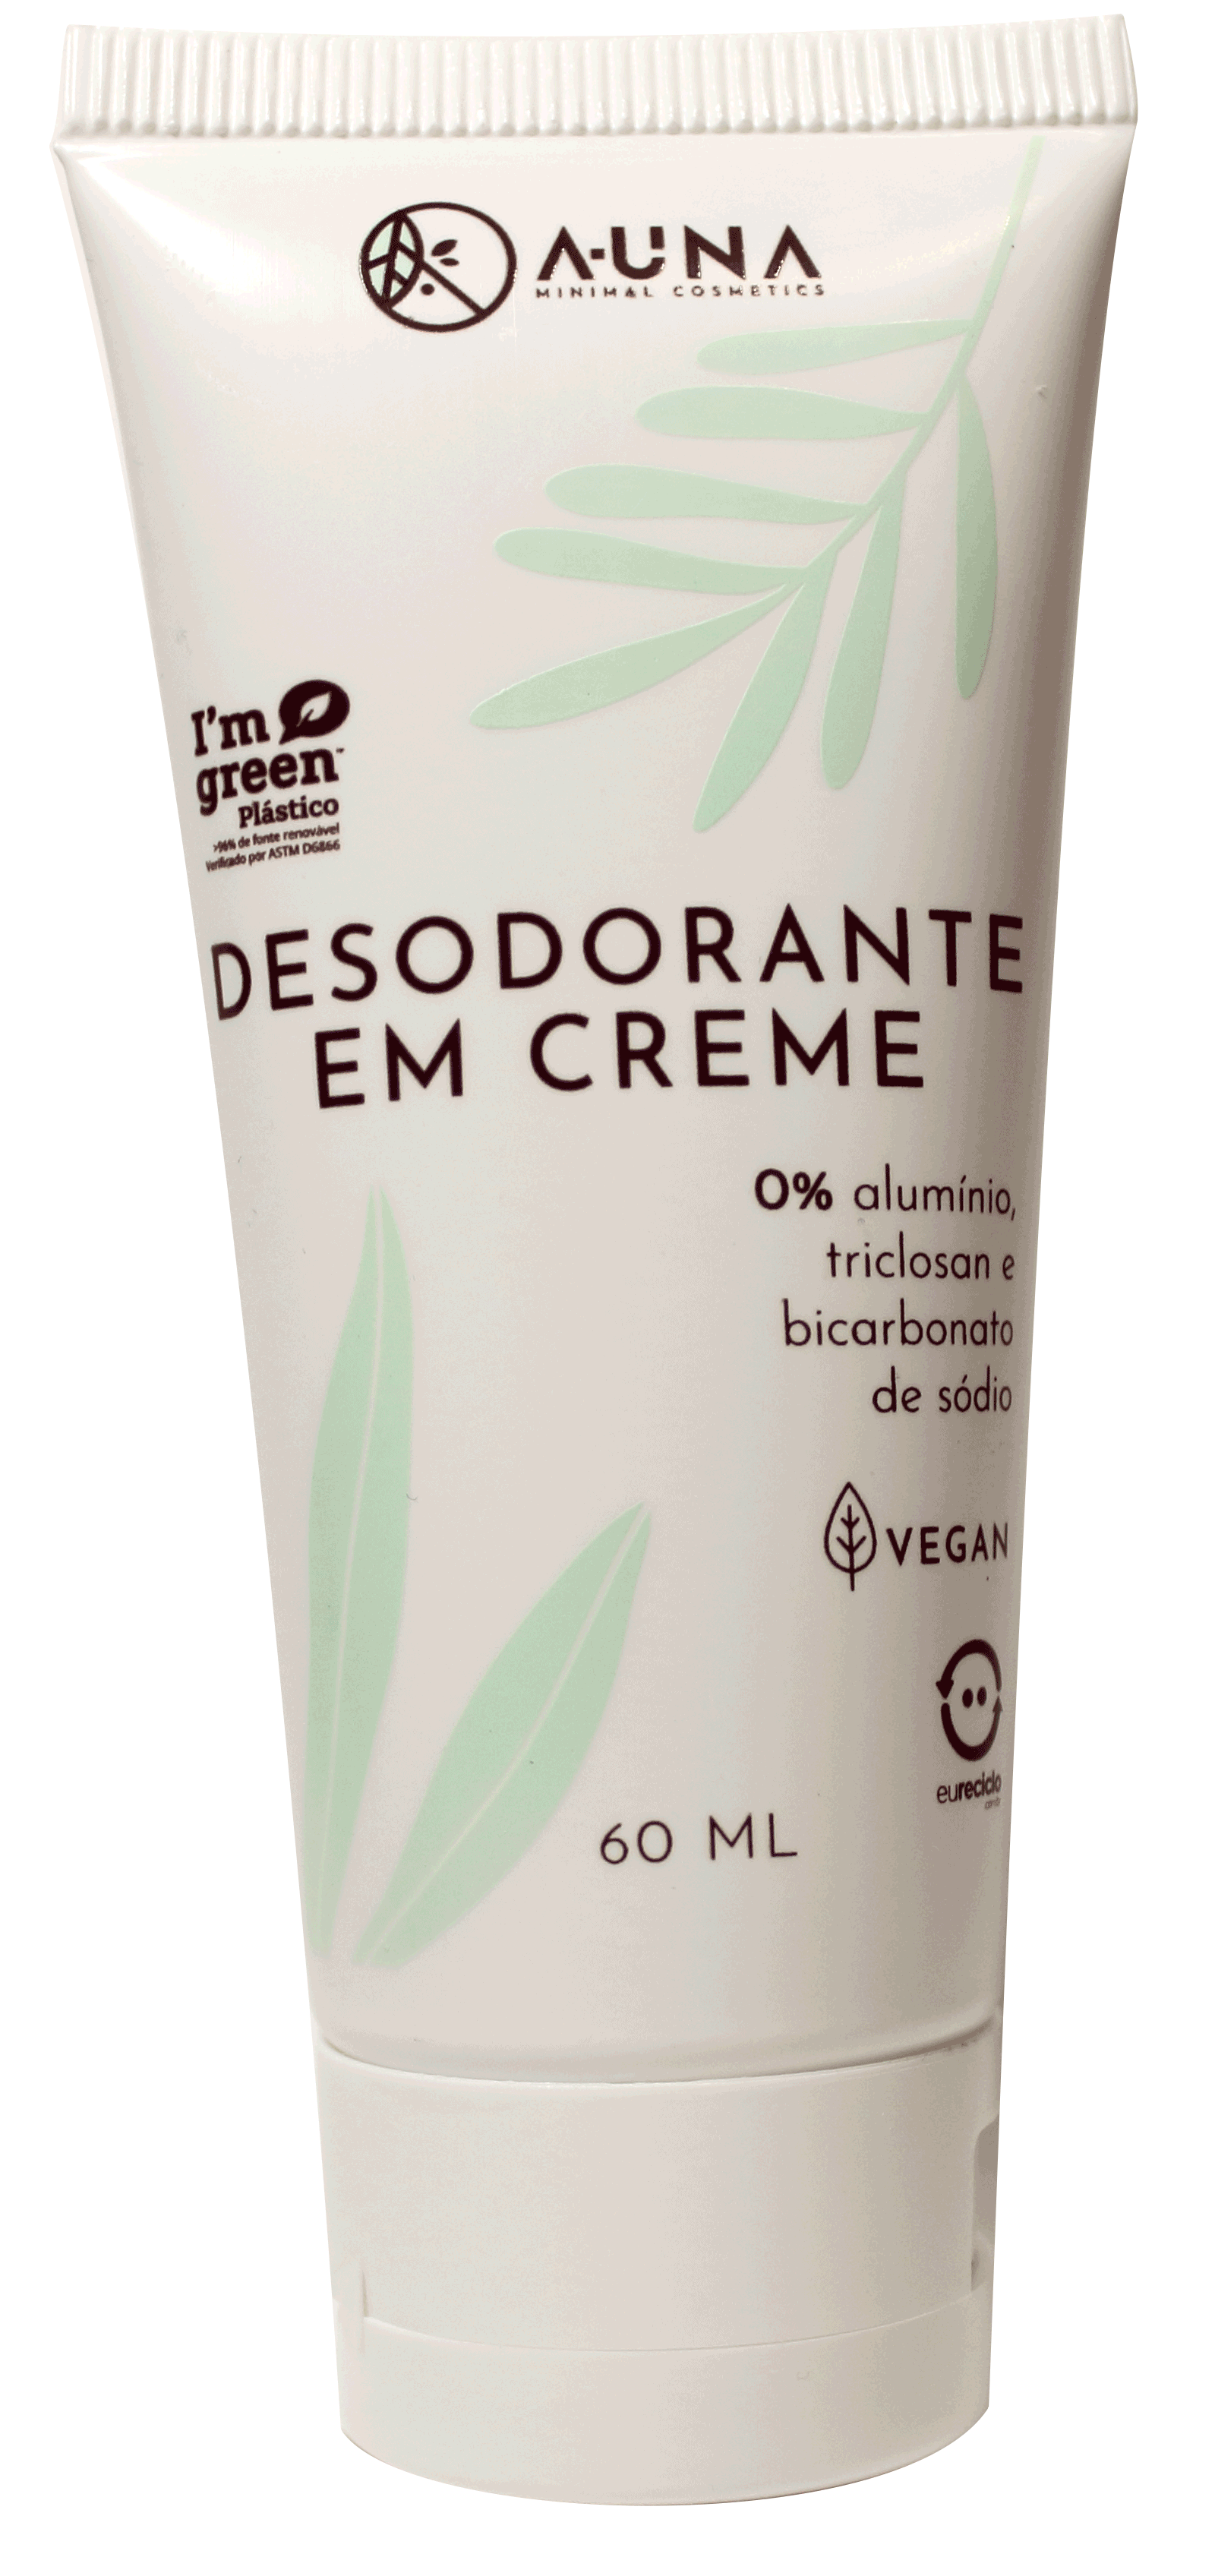 Cosmetoguia - Desodorante em creme A-UNA - 0% Alumínio, Triclosan